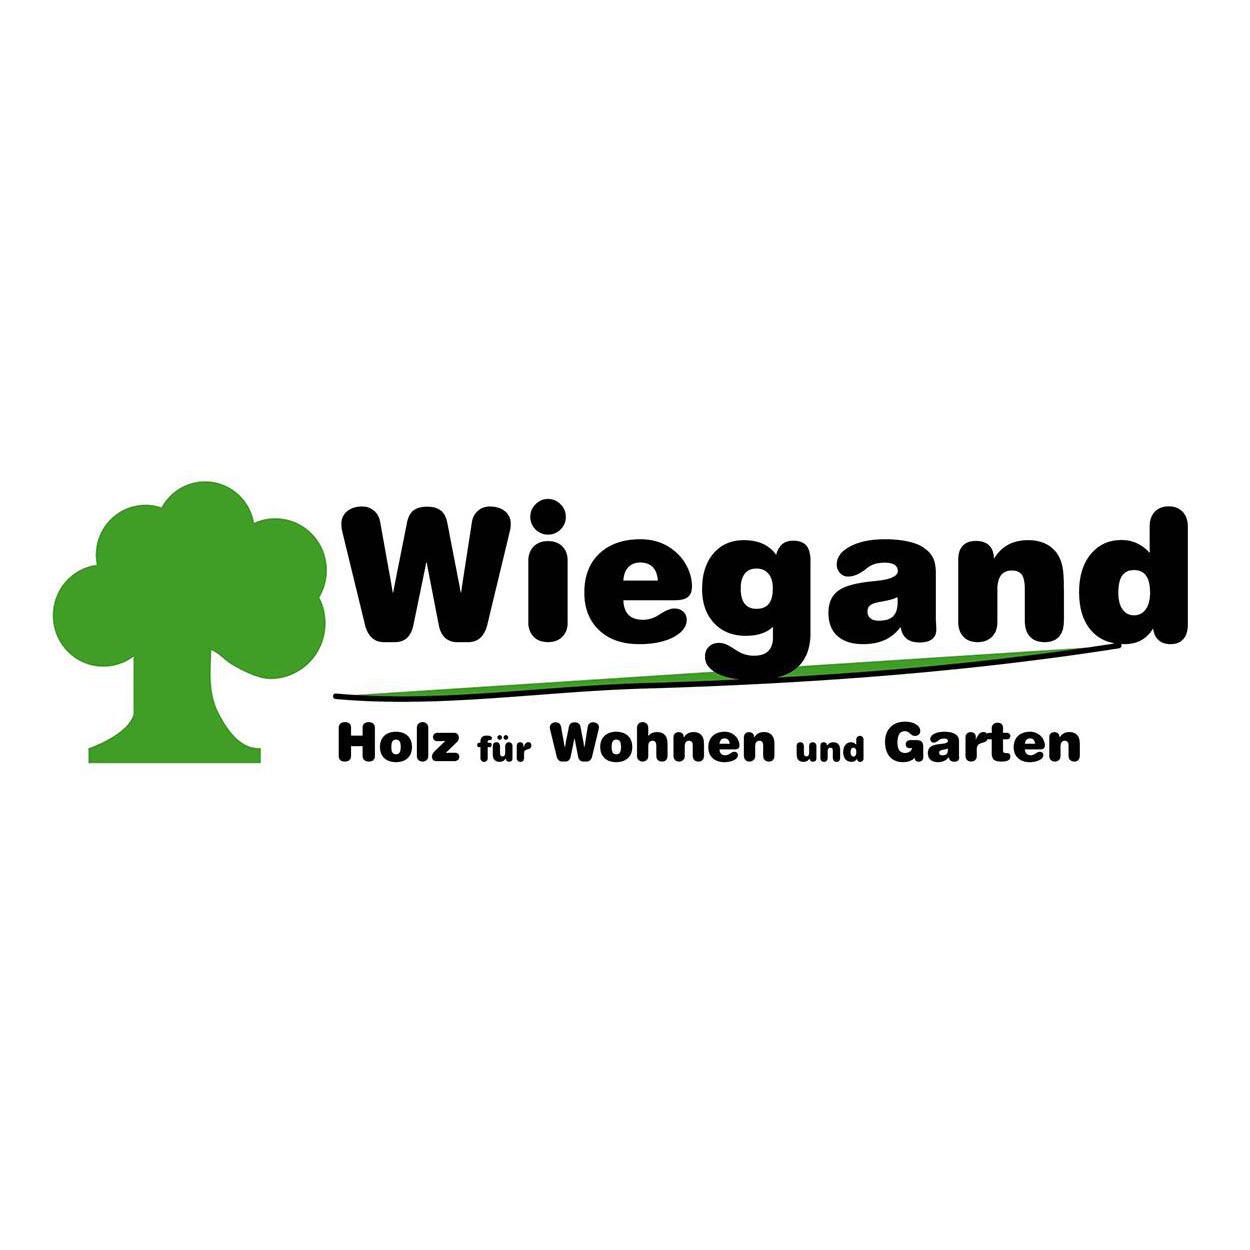 Holz Wiegand Logo